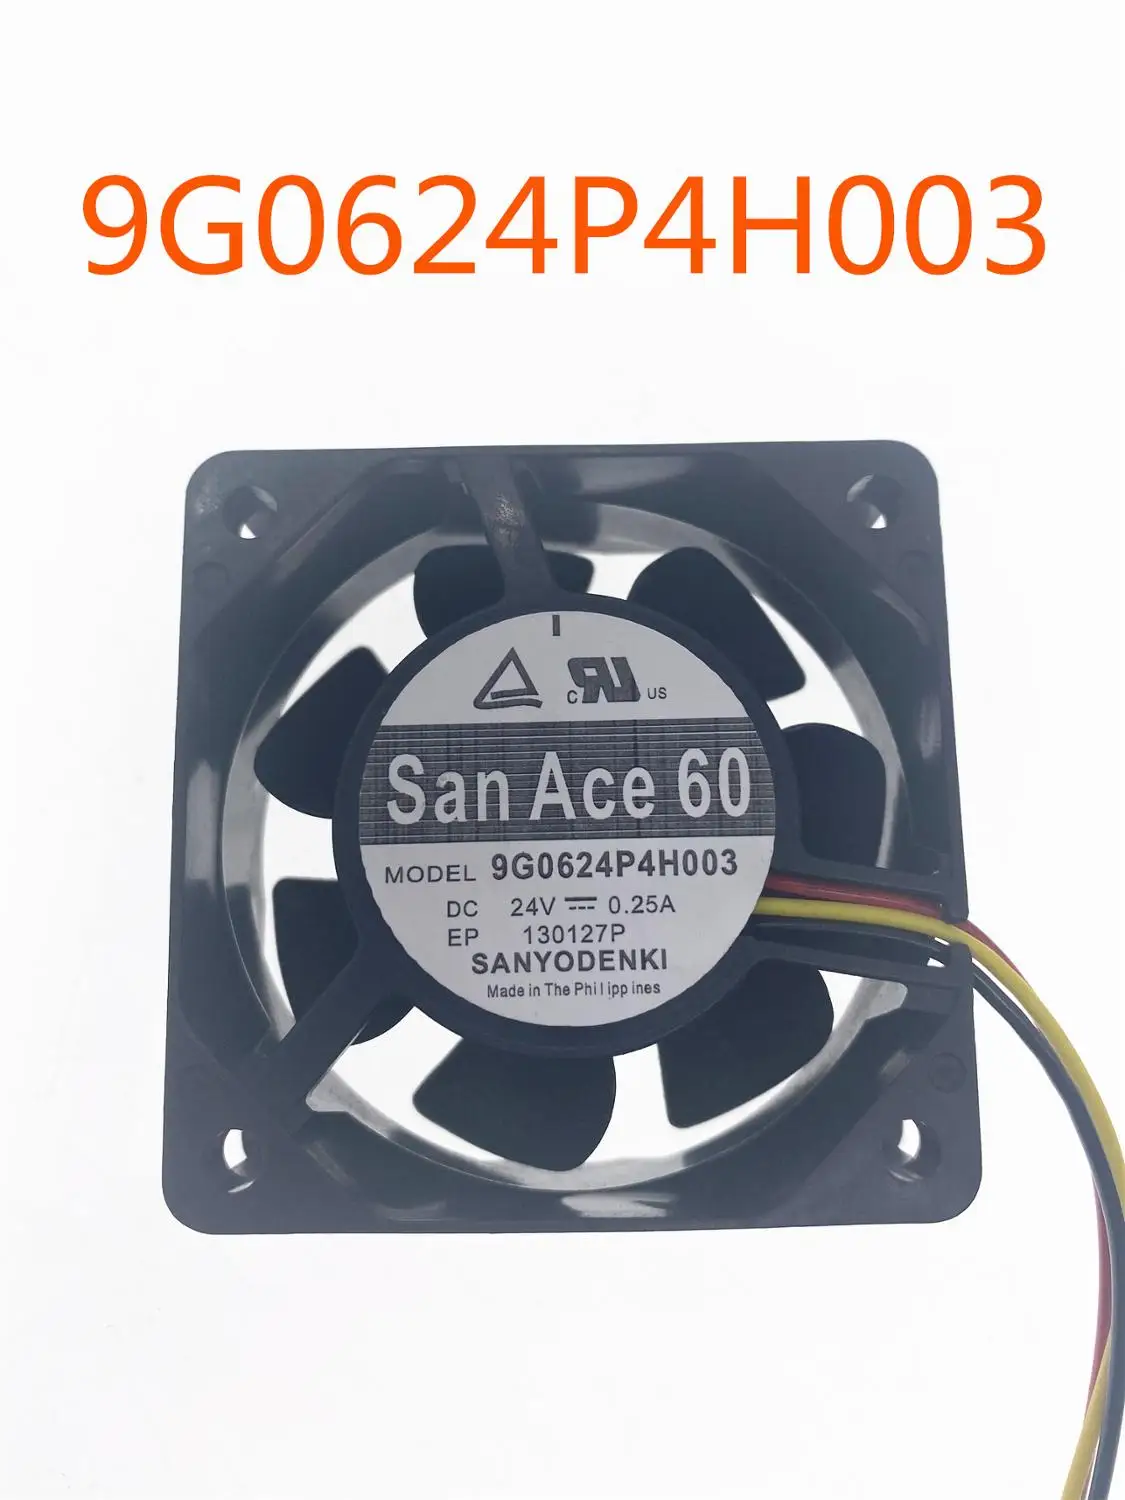 

For SANYO 9G0624P4H003 DC 24V 0.25A 60x60x25mm 4-wire Server Cooling Fan